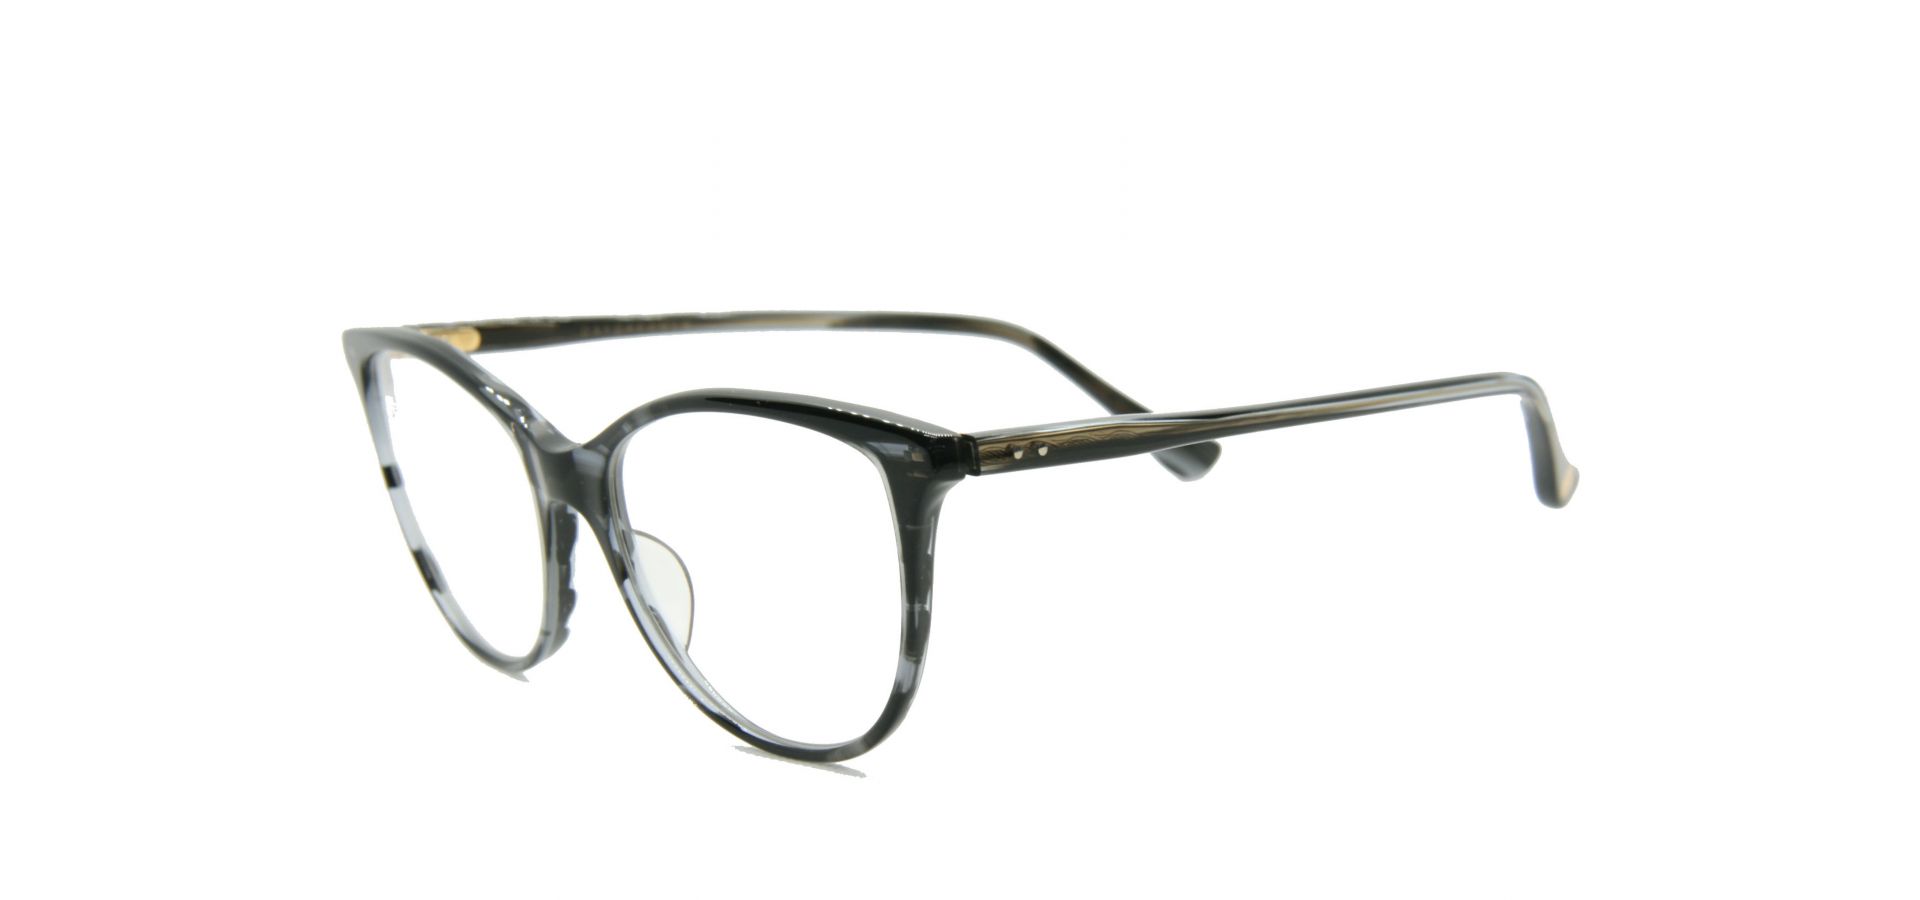 Korekcijska očala Dita DAYDREAMER SMOKE CRYSTAL: Velikost: 53/145/17, Spol: ženska, Material: acetat